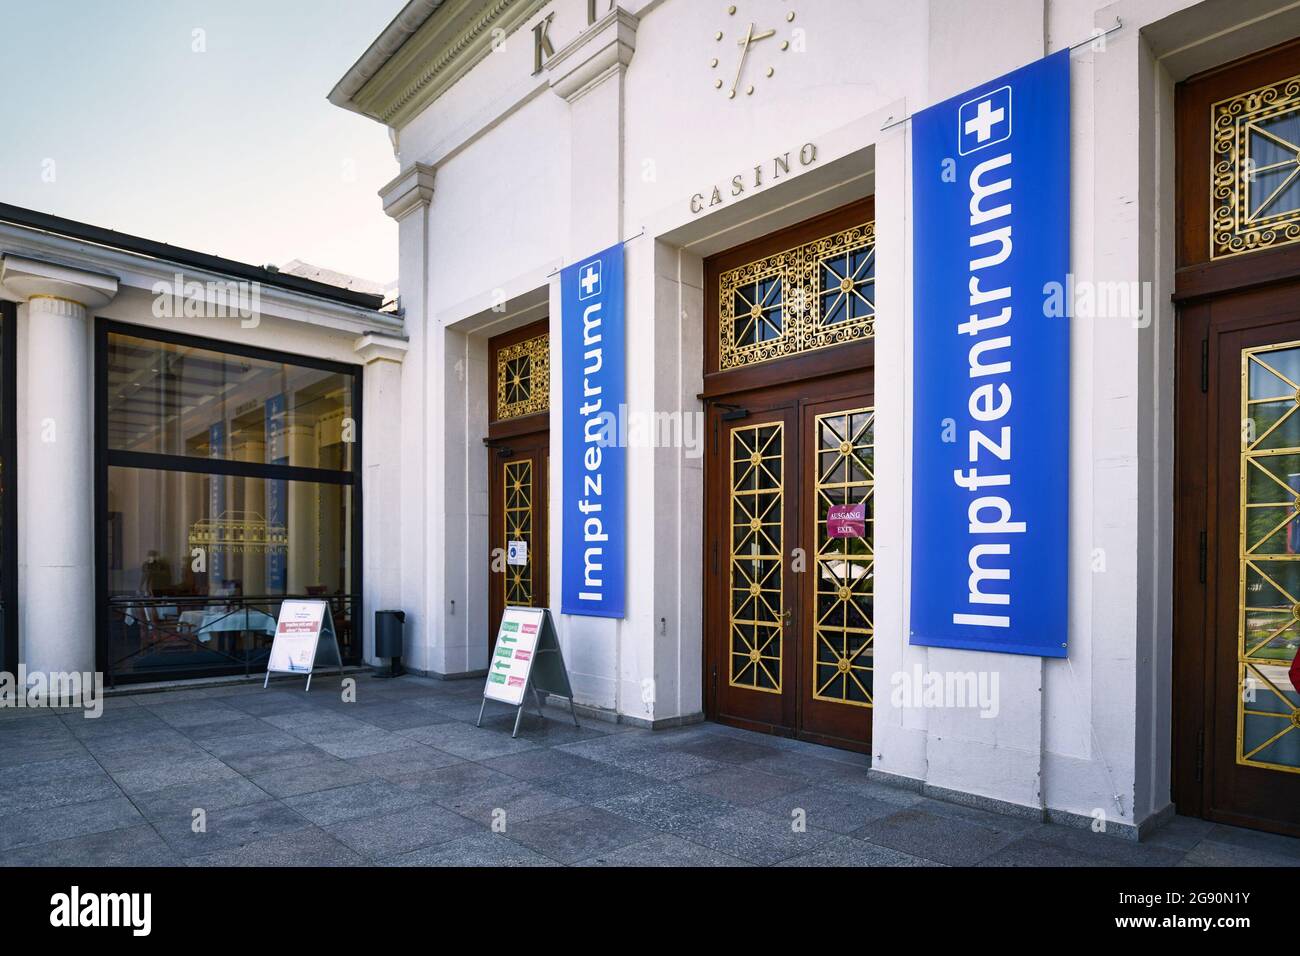 Baden-Baden, Allemagne - juillet 2021: Centre de vaccination allemand appelé 'Impfzentrum' installé à Casion Banque D'Images